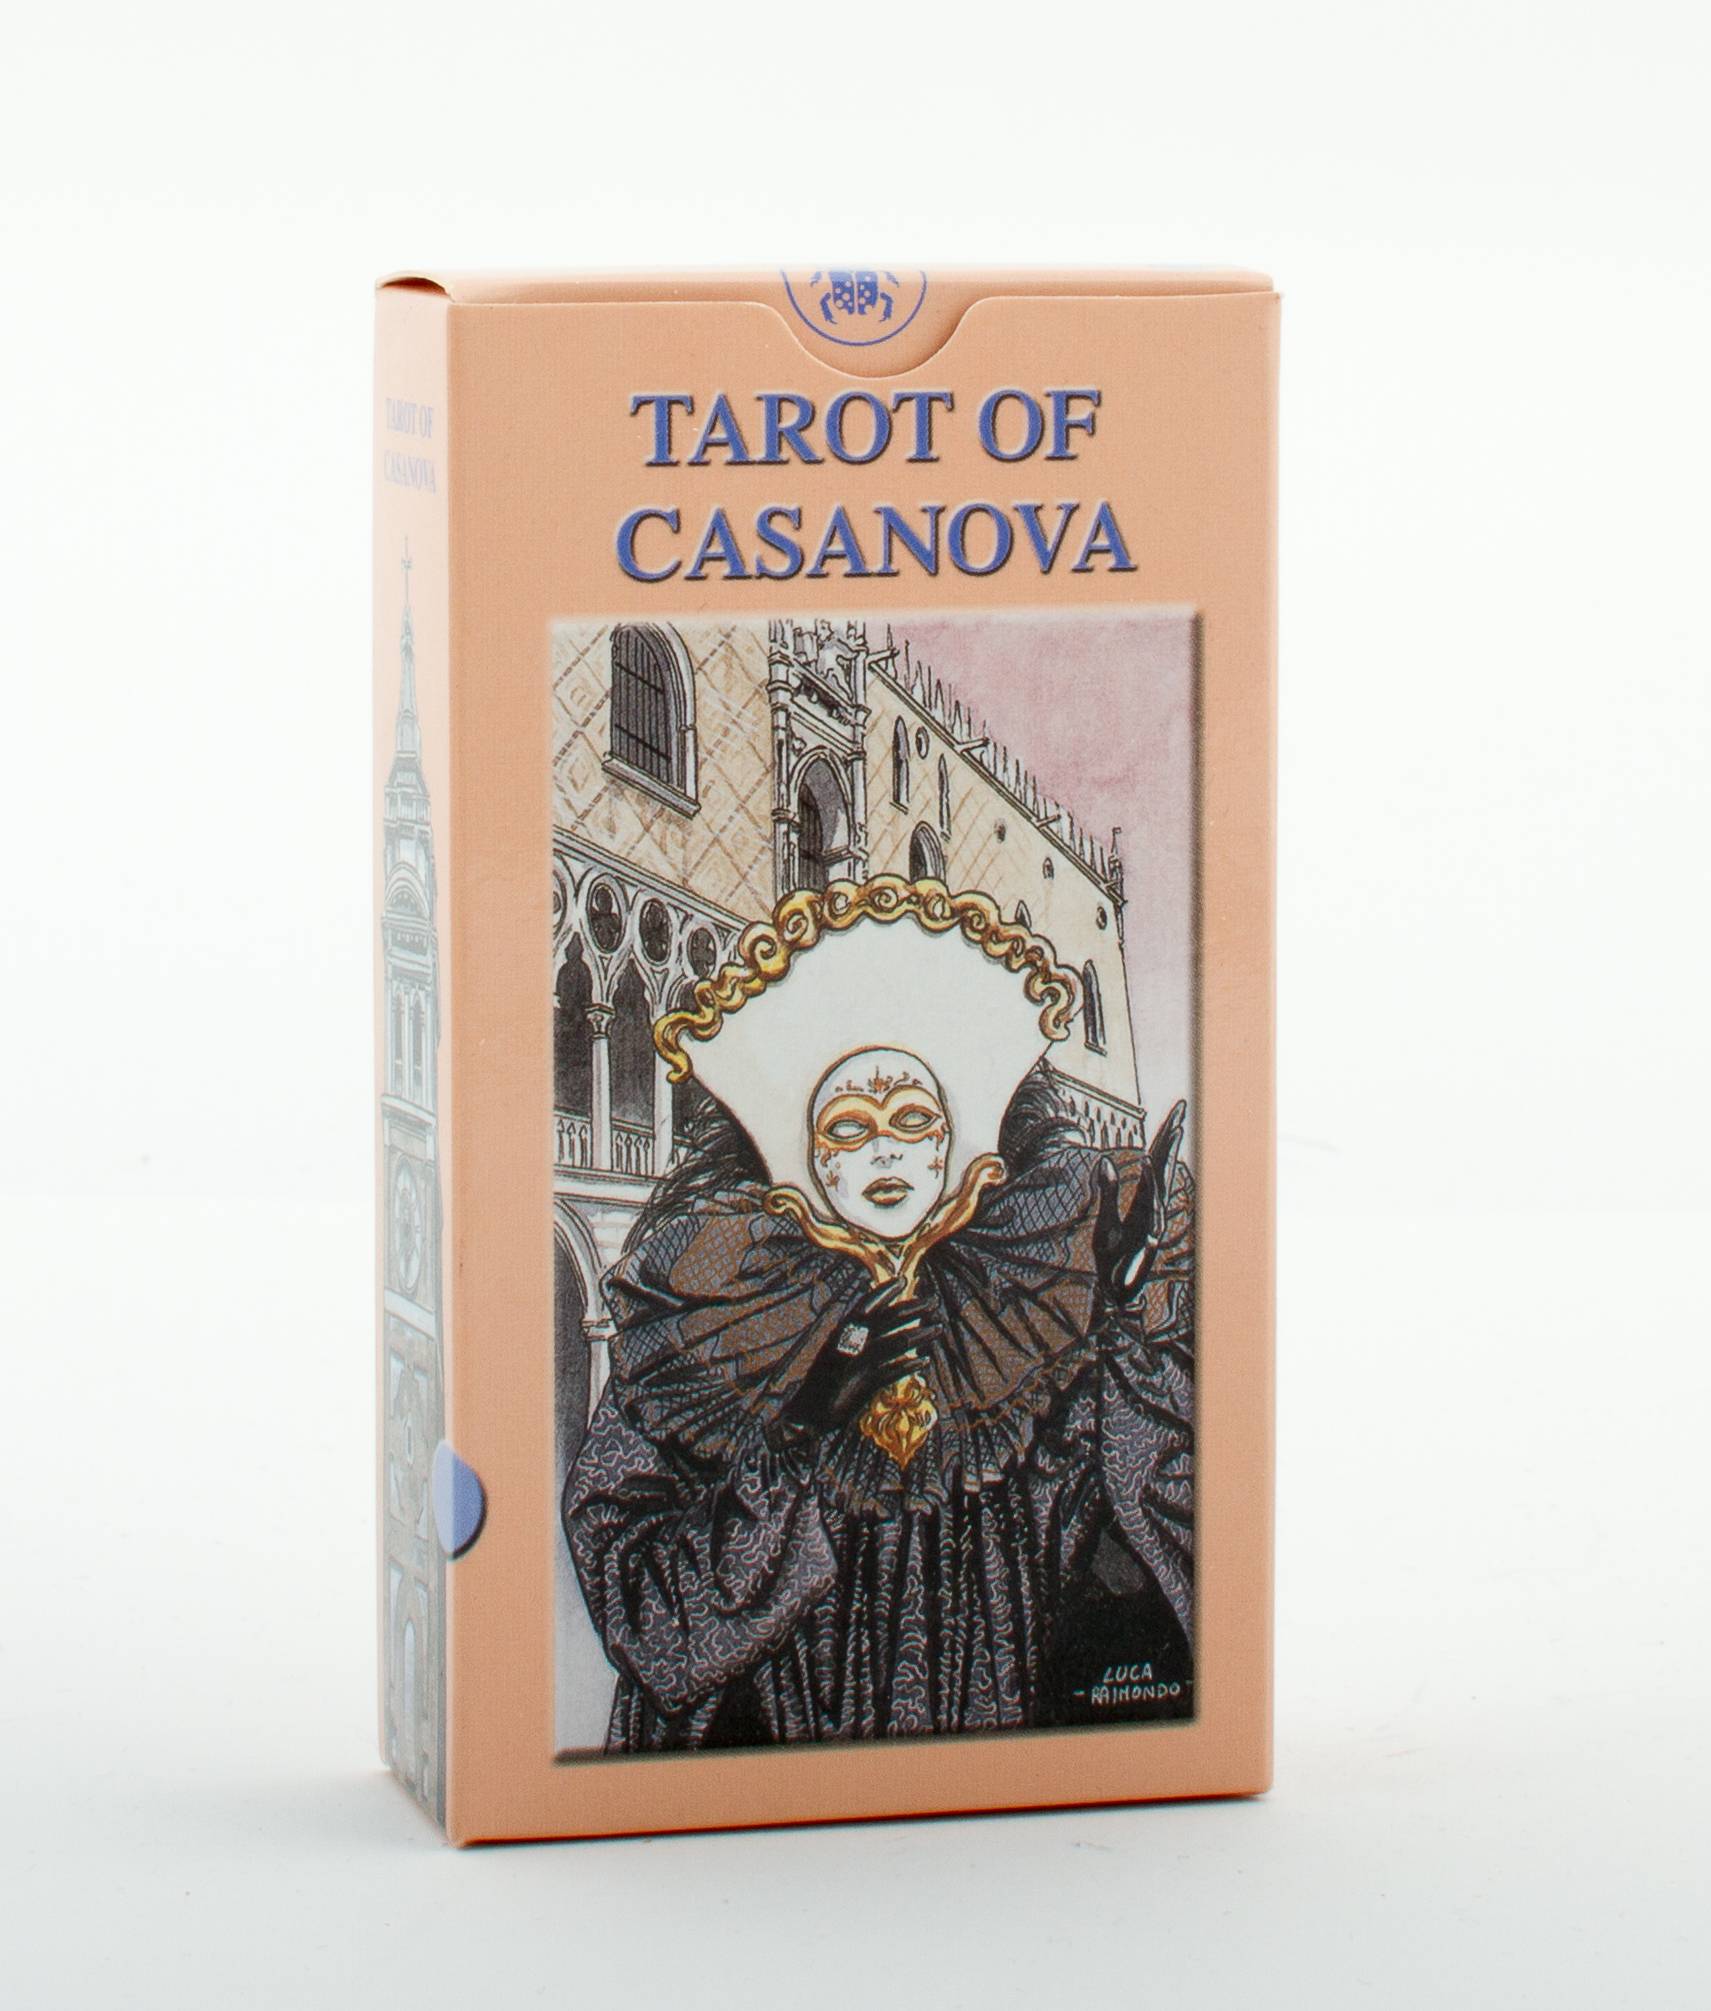 Tarot of casanova